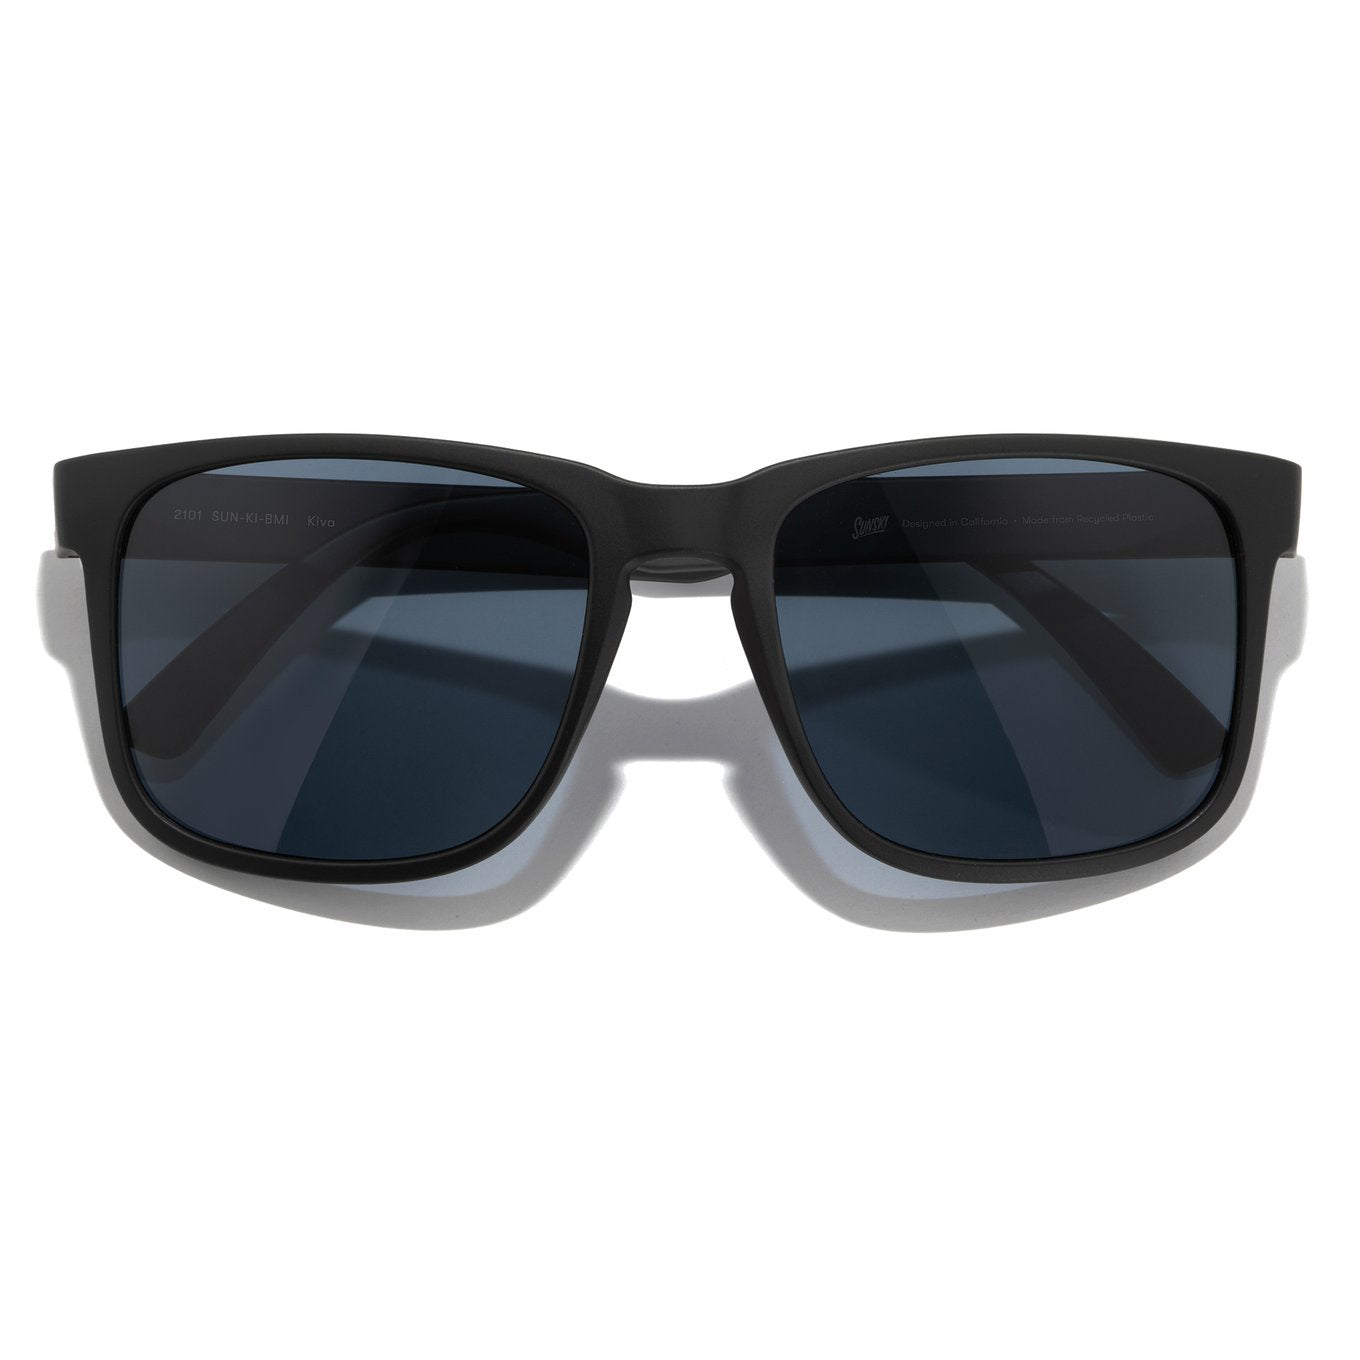 SUNSKI Sunglasses - Kiva Black Midnight